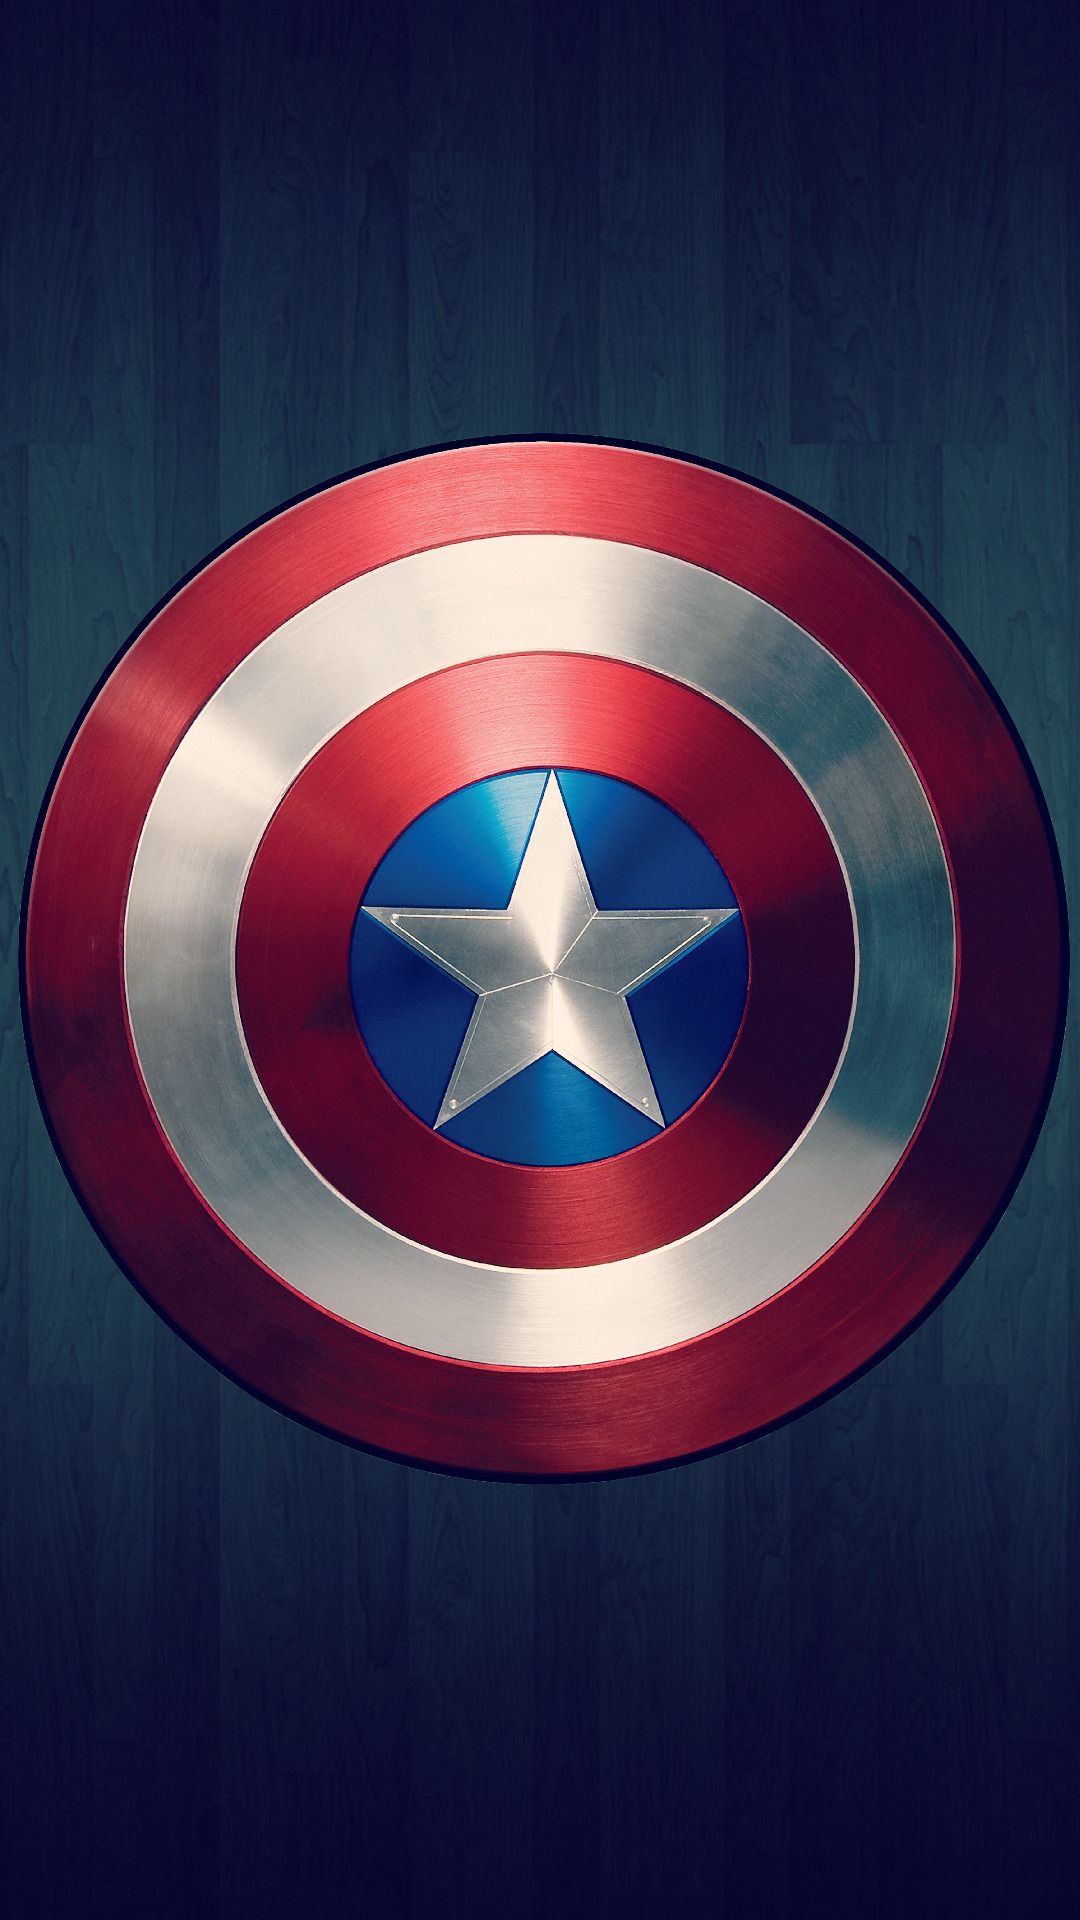 Captain America Shield Wallpaper 4k Images Result - Samdexo